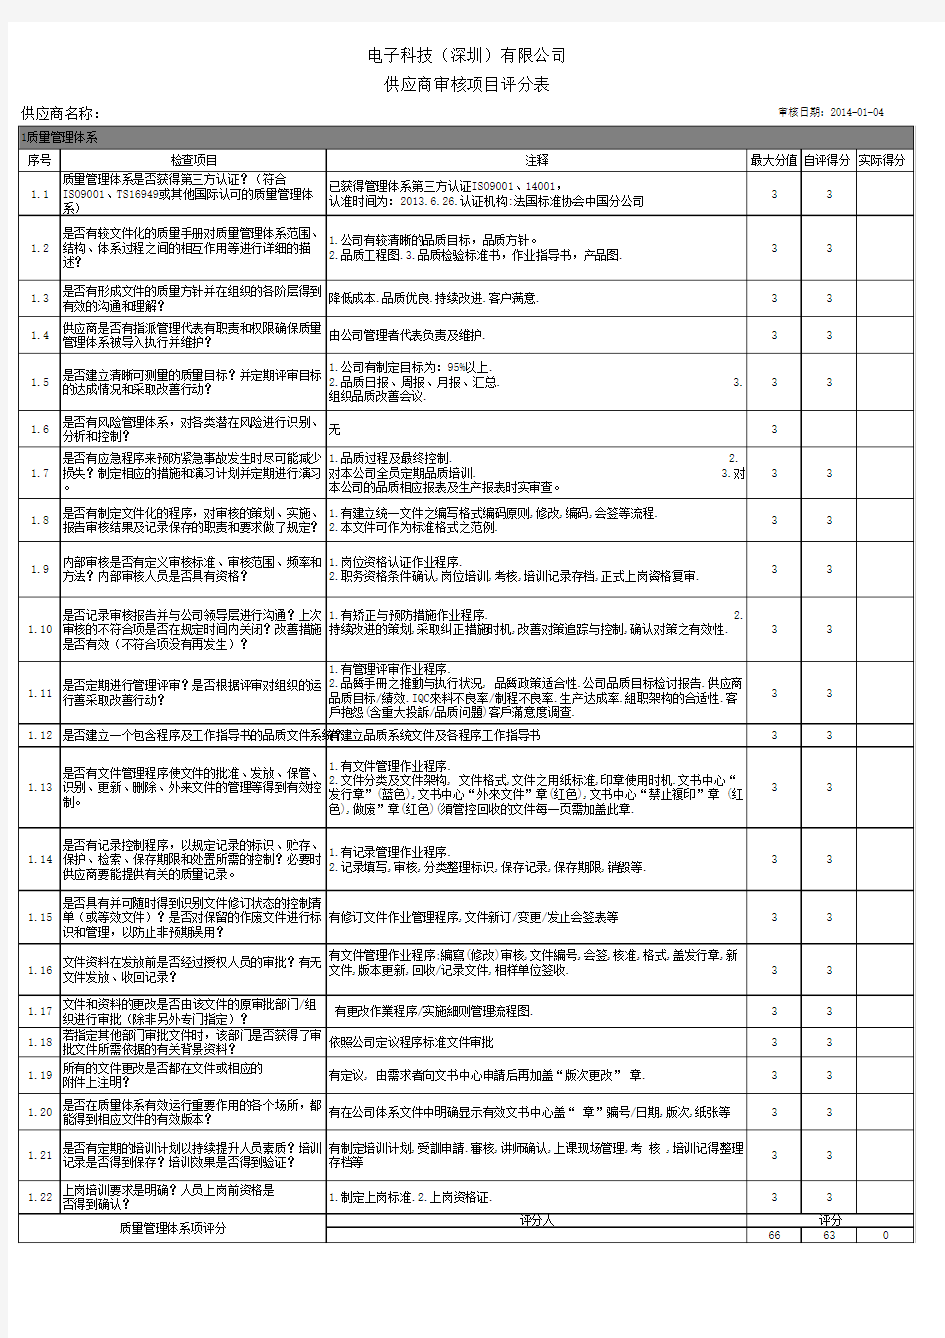 供应商审核项目评分表